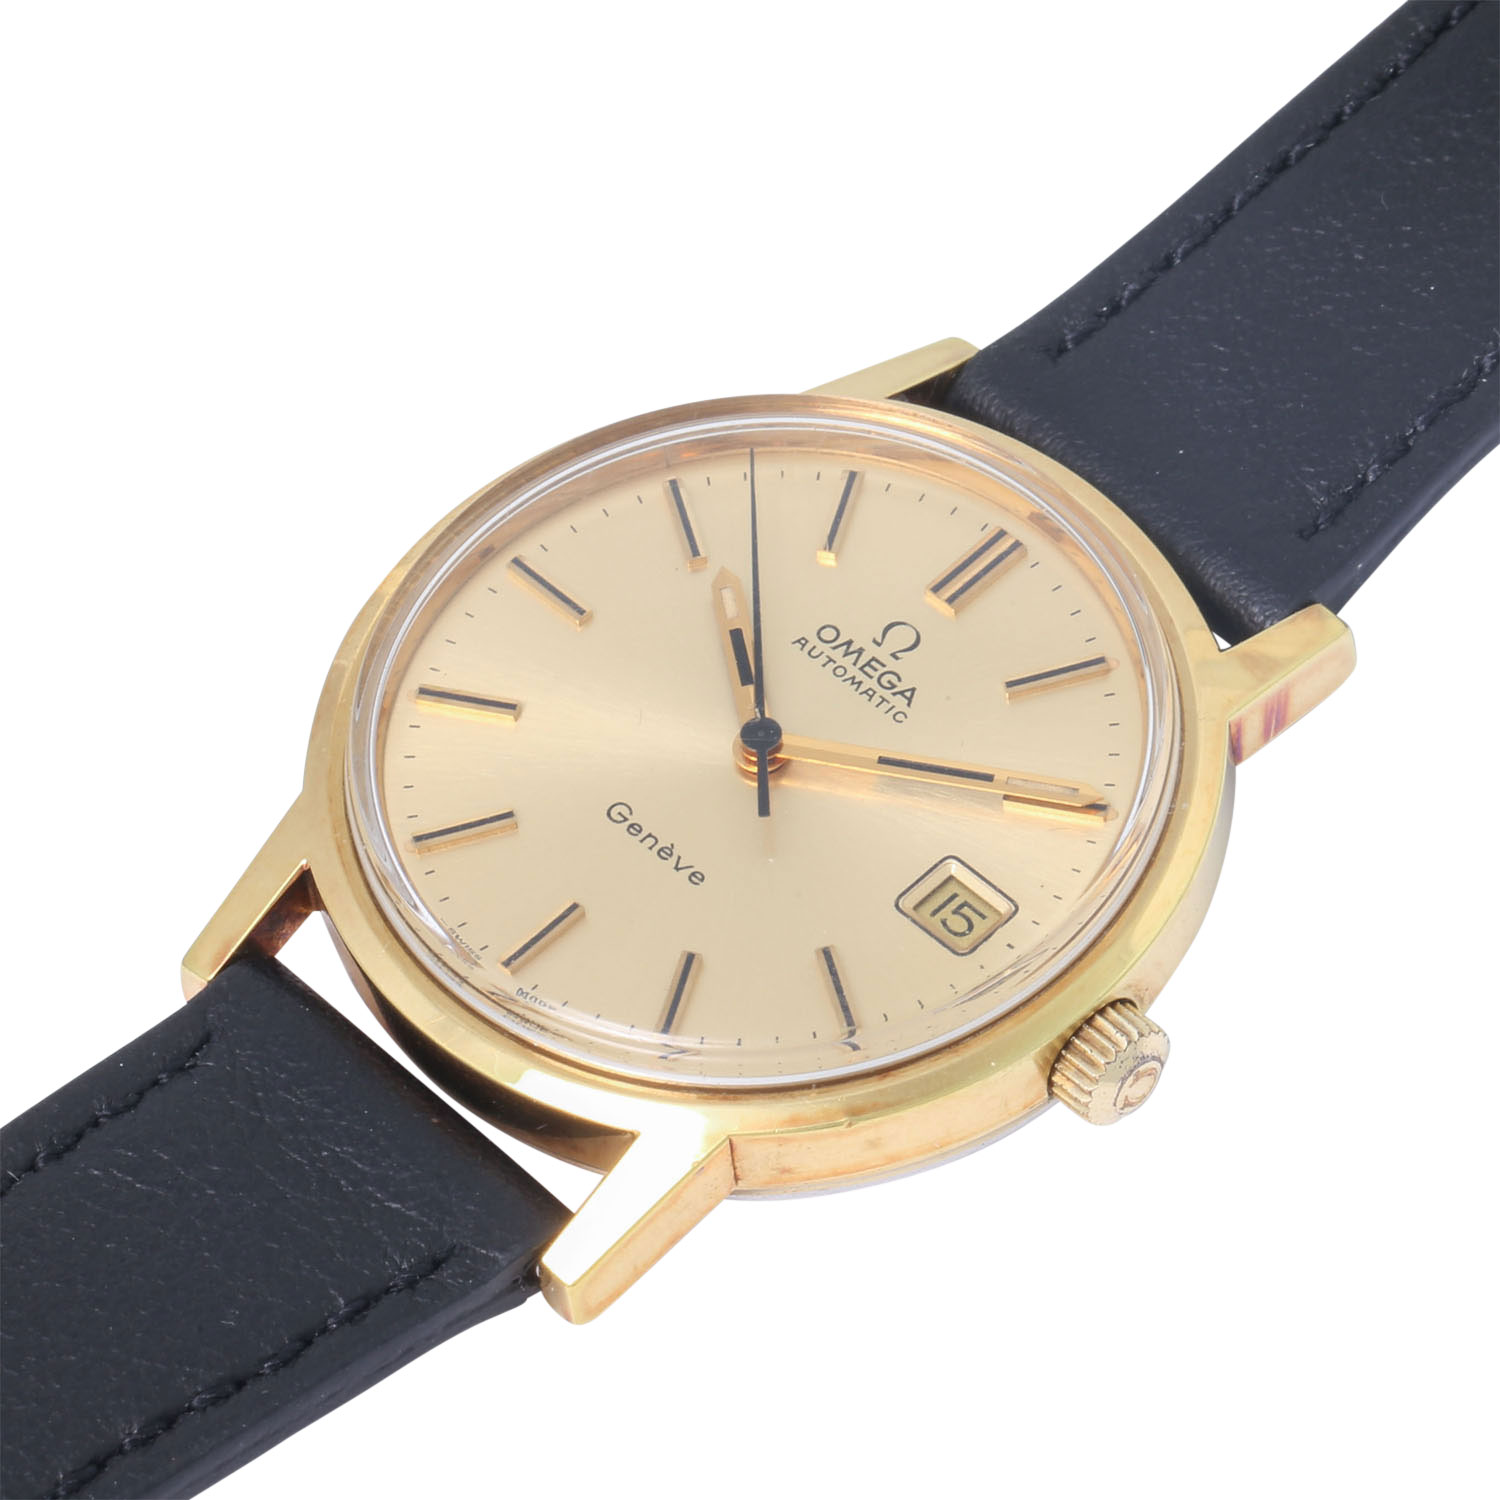 OMEGA Geneve Vintage Armbanduhr, Ref. 166.0163. Ca. 1970er Jahre. - Image 5 of 7